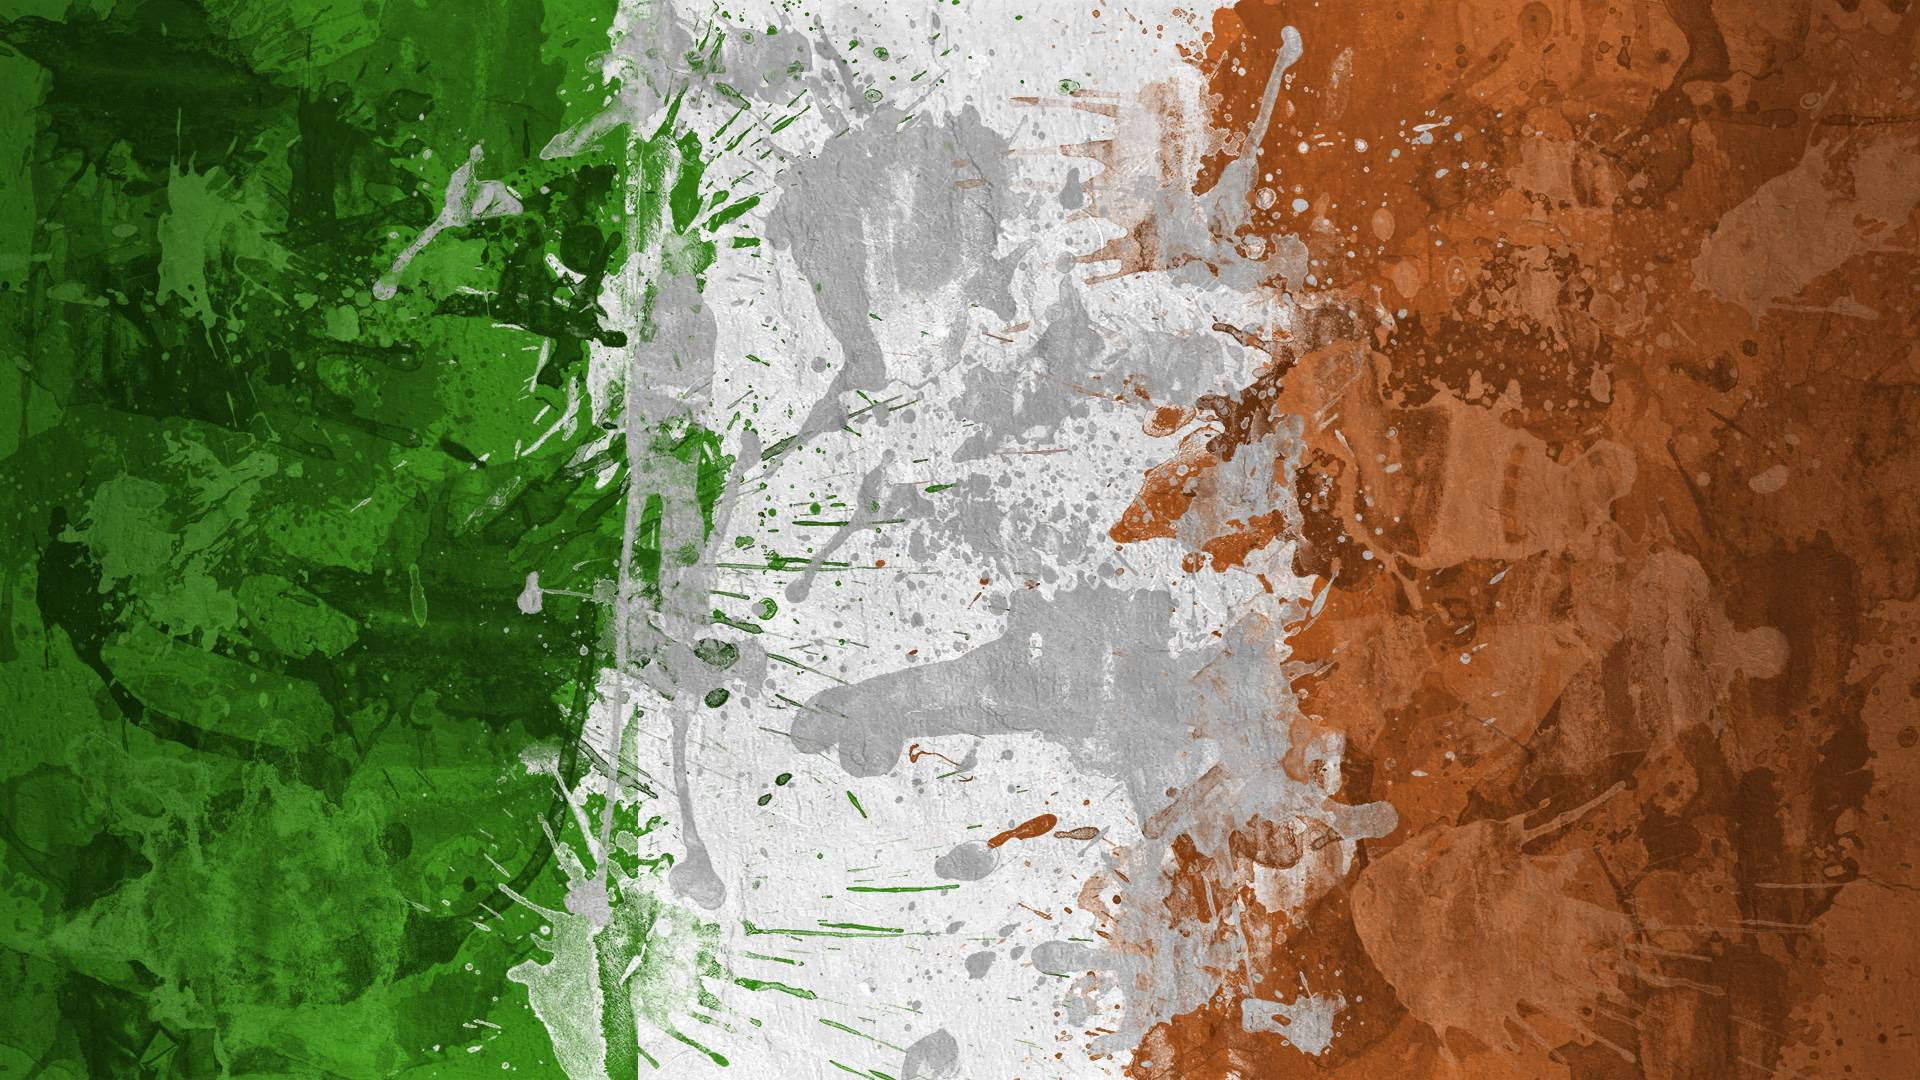 Irish 1920X1080 Wallpaper and Background Image